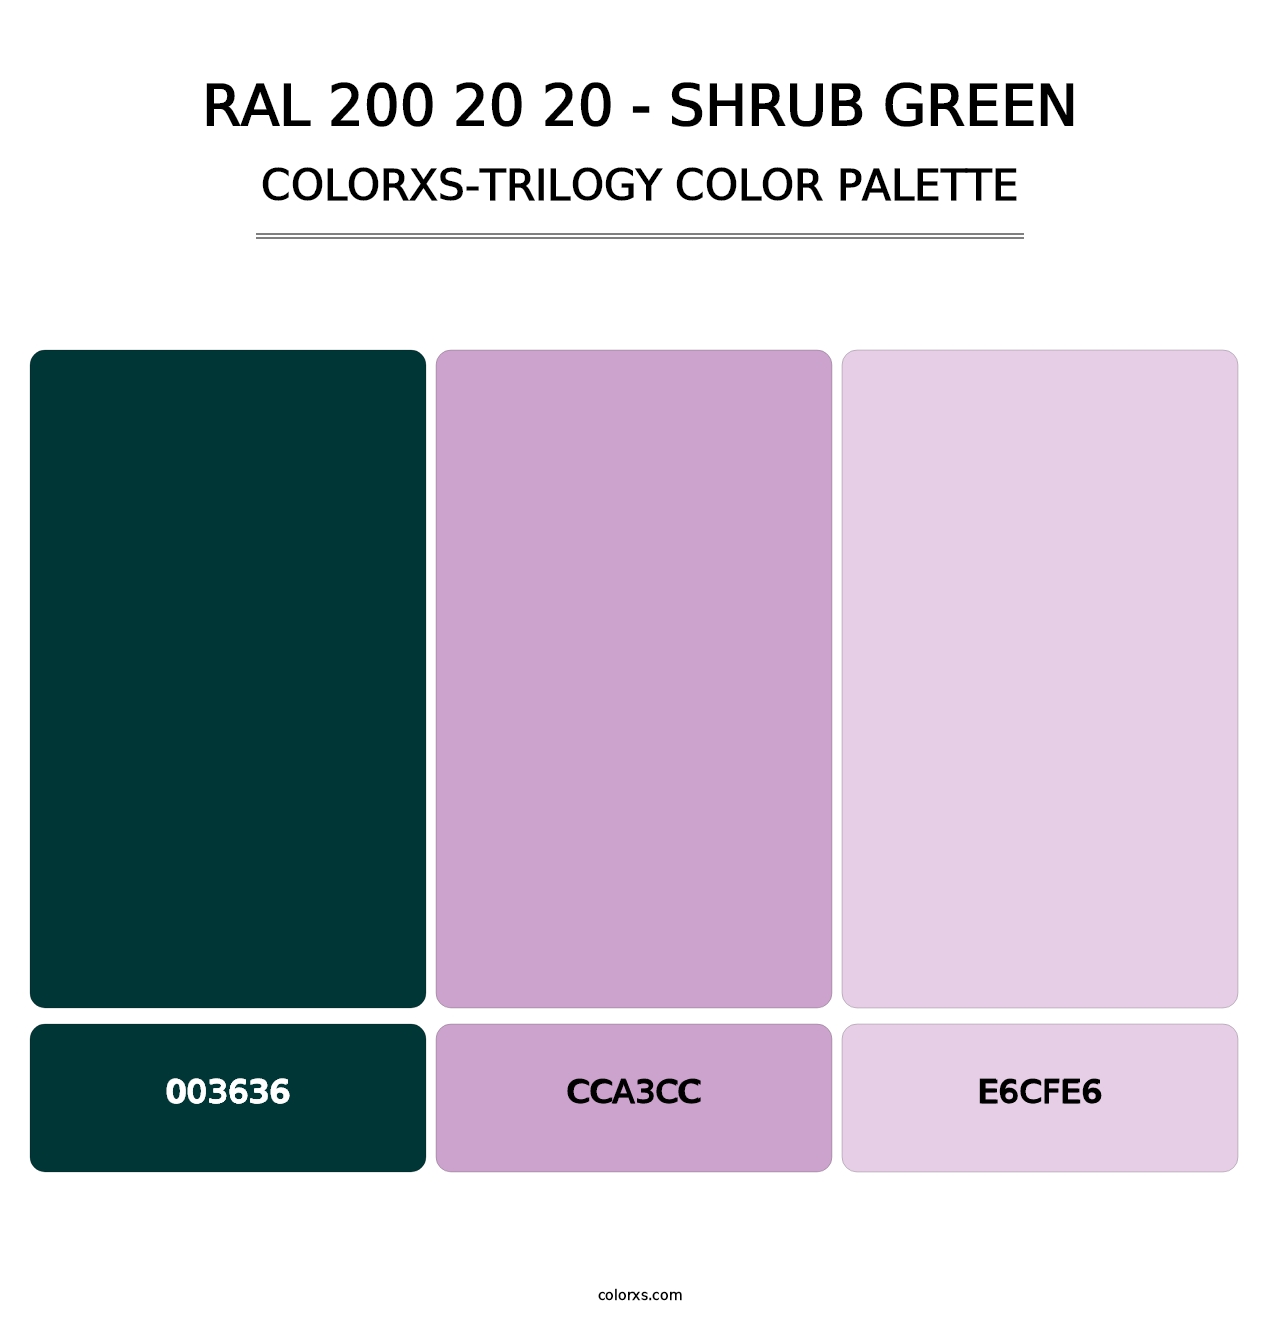 RAL 200 20 20 - Shrub Green - Colorxs Trilogy Palette